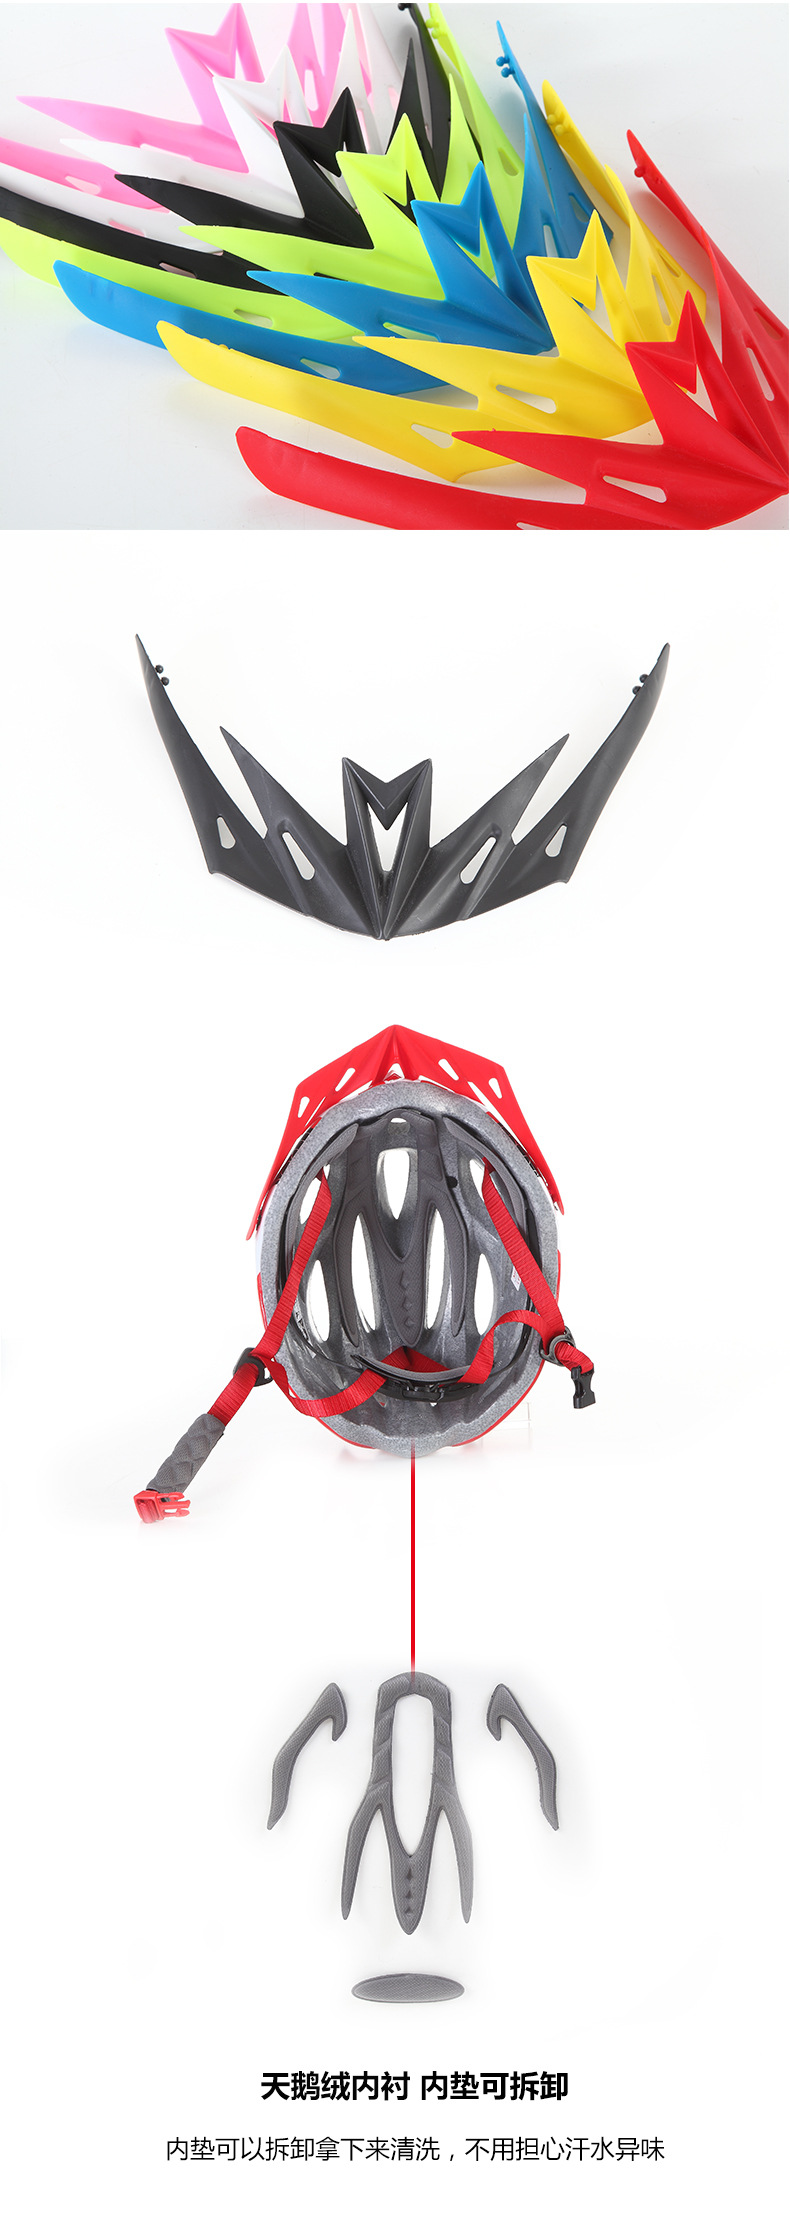 2018新款山地车骑行头盔    超轻一体成型头盔    自行车头盔护具示例图11